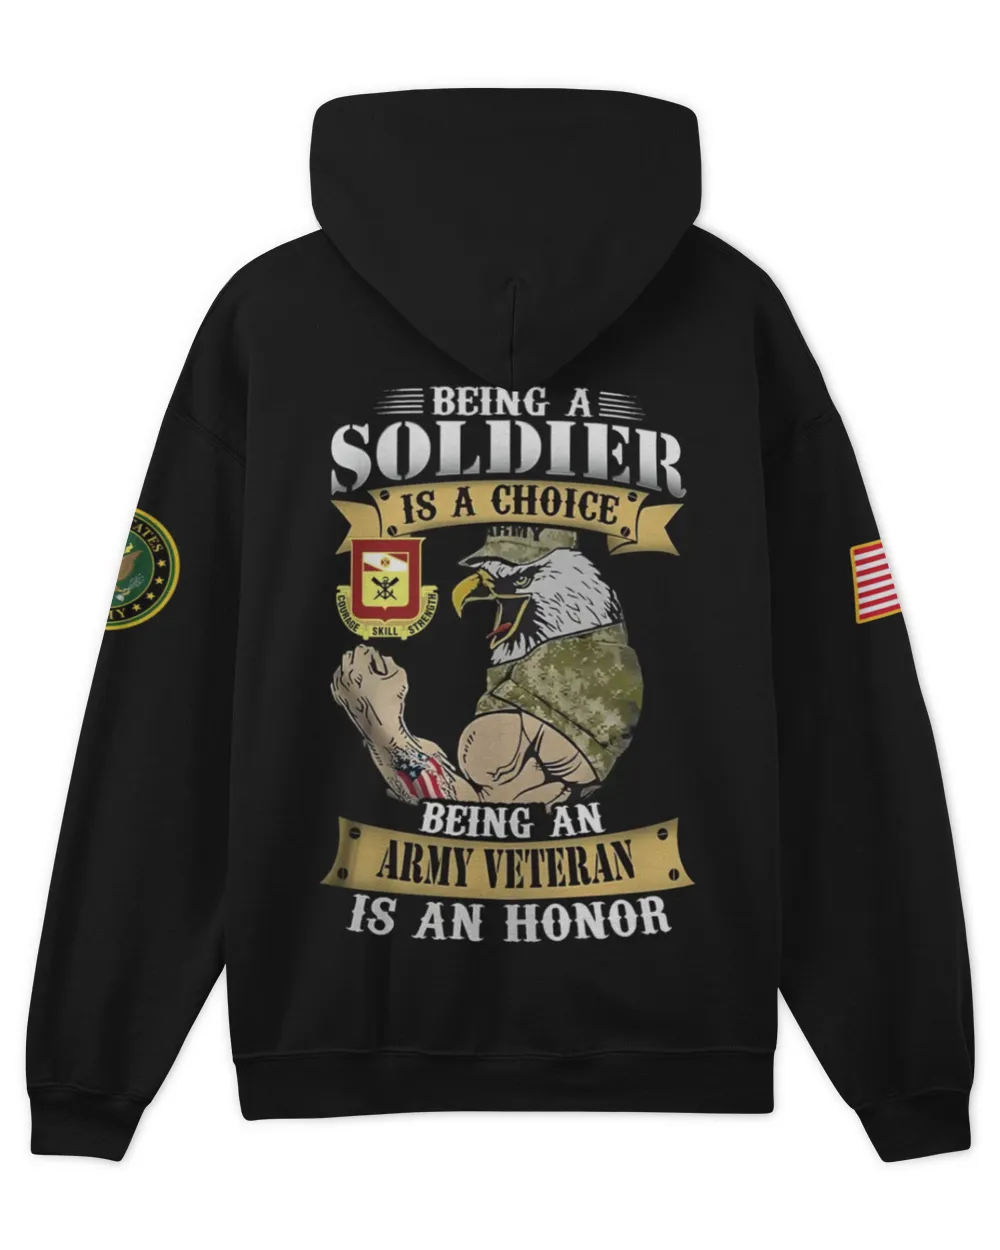 5th Engineer Battalion Tshirt